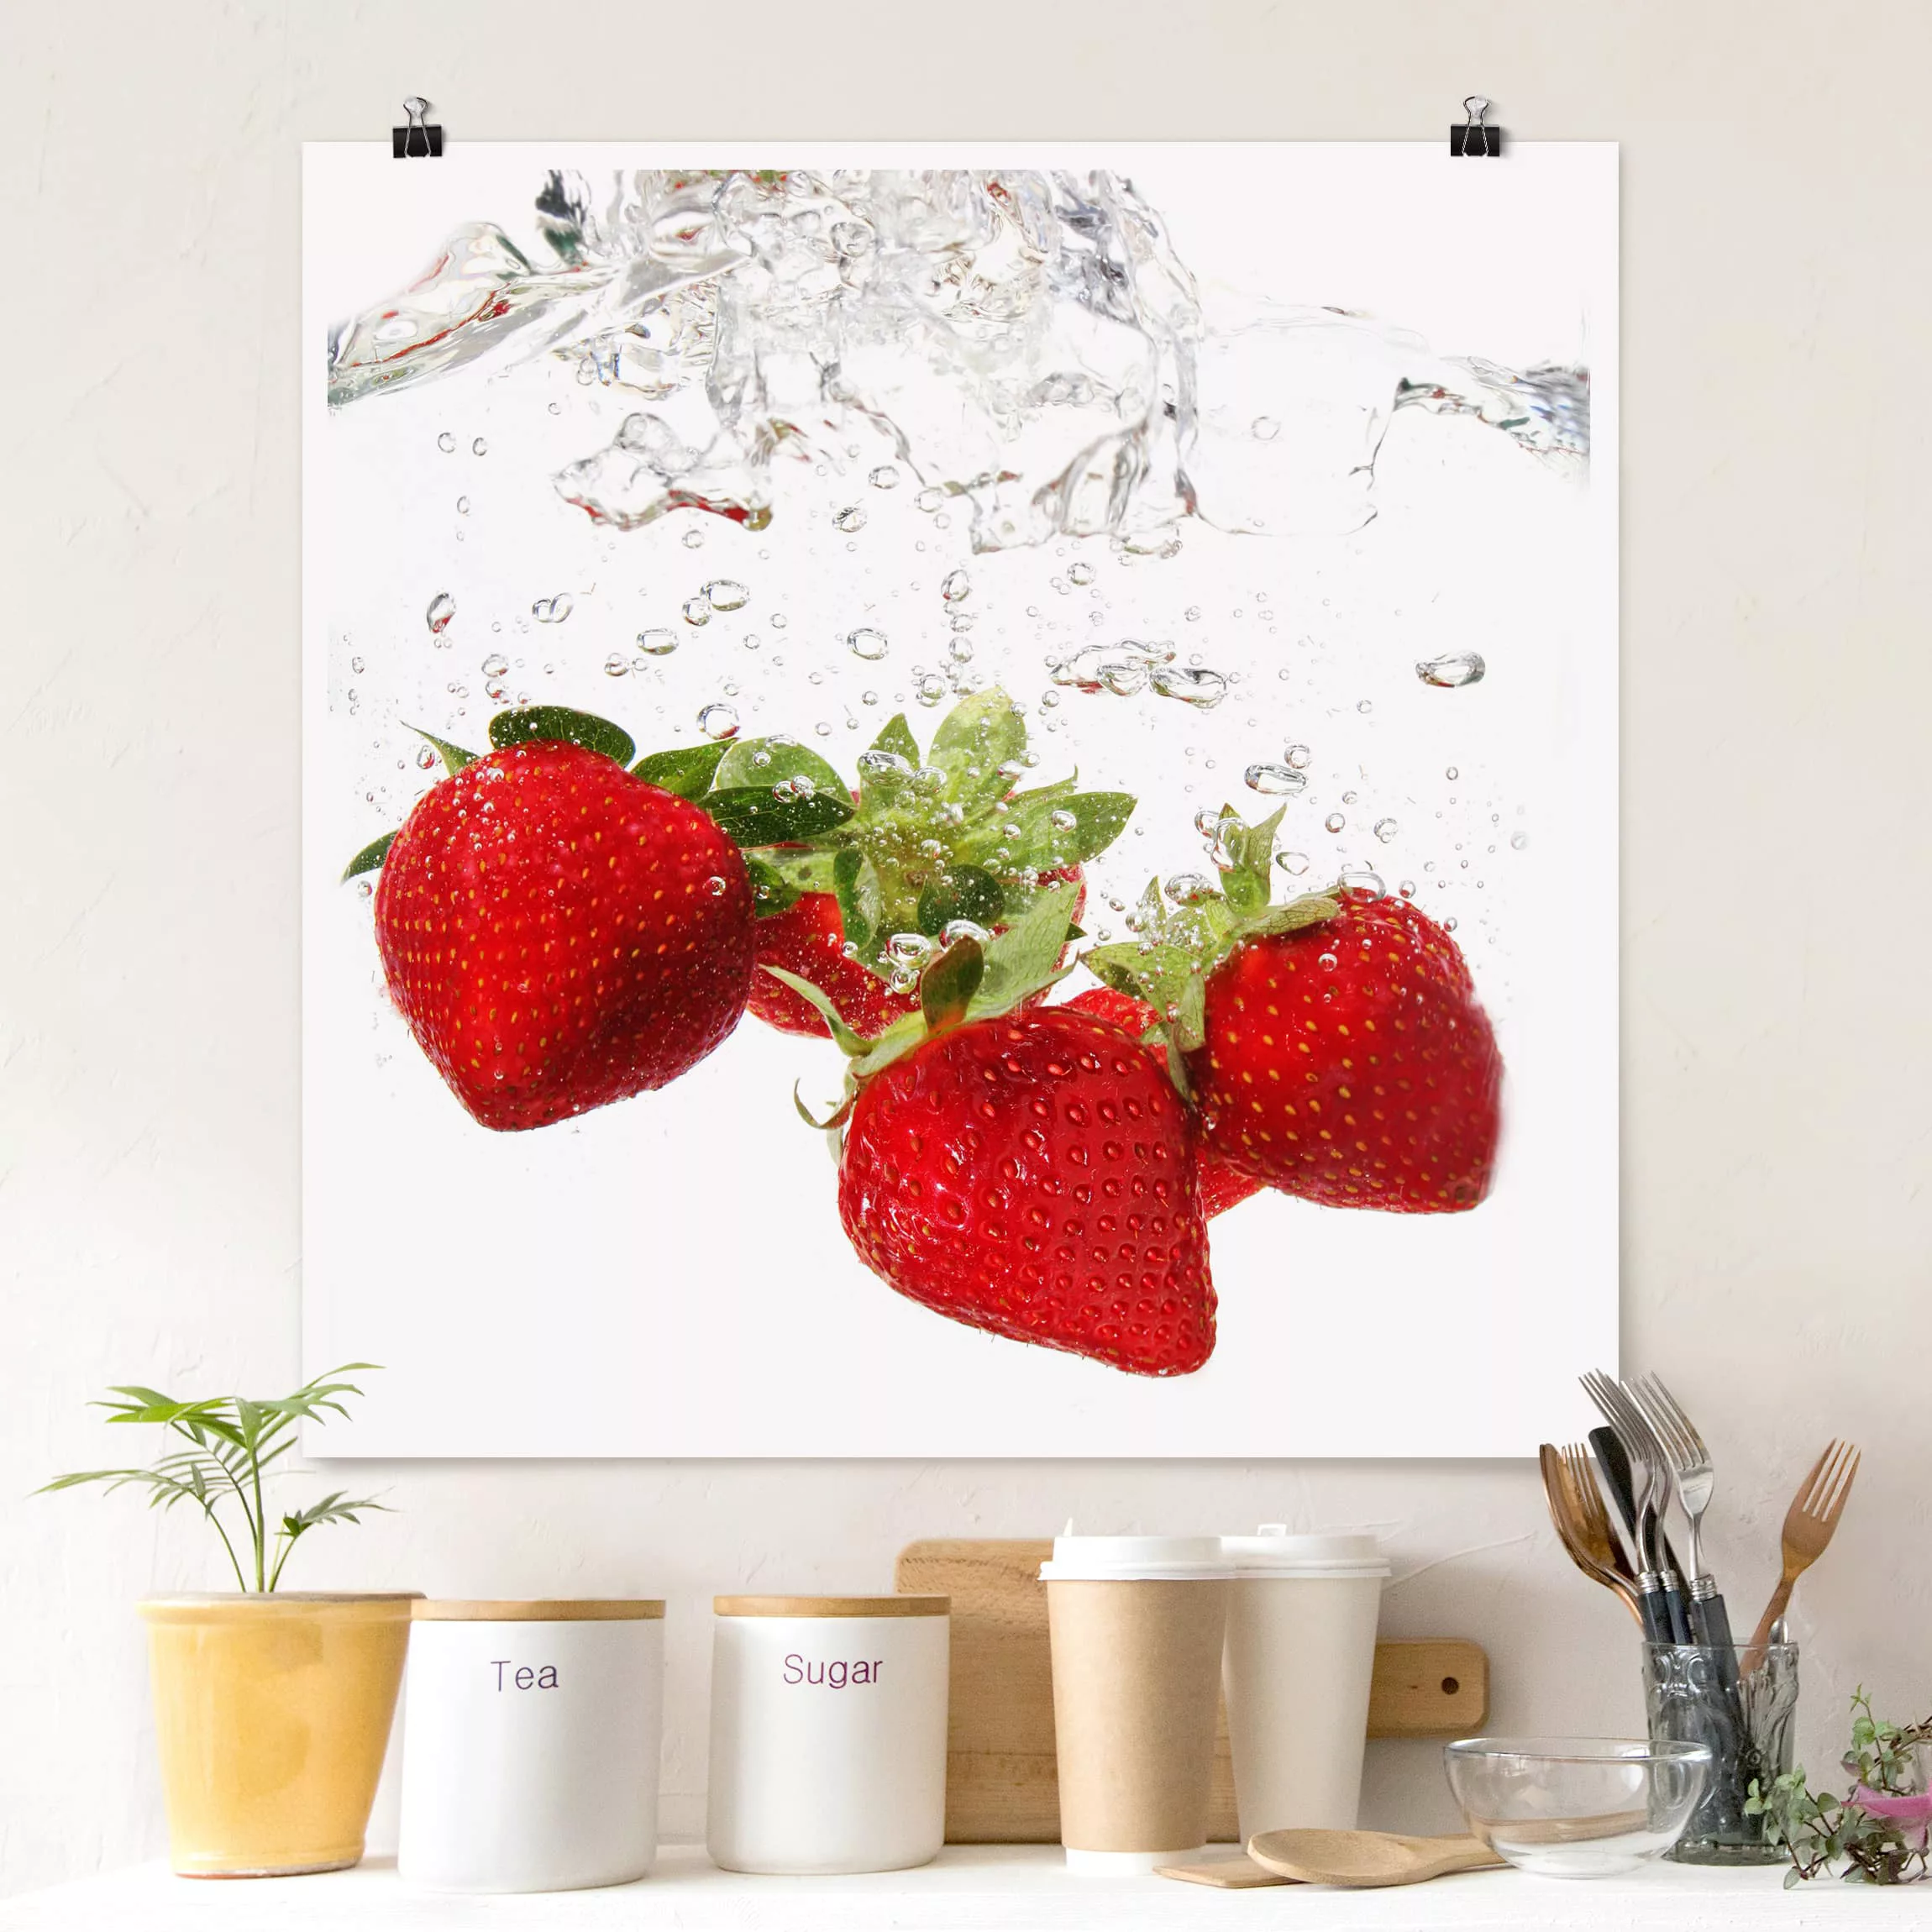 Poster Küche - Quadrat Strawberry Water günstig online kaufen